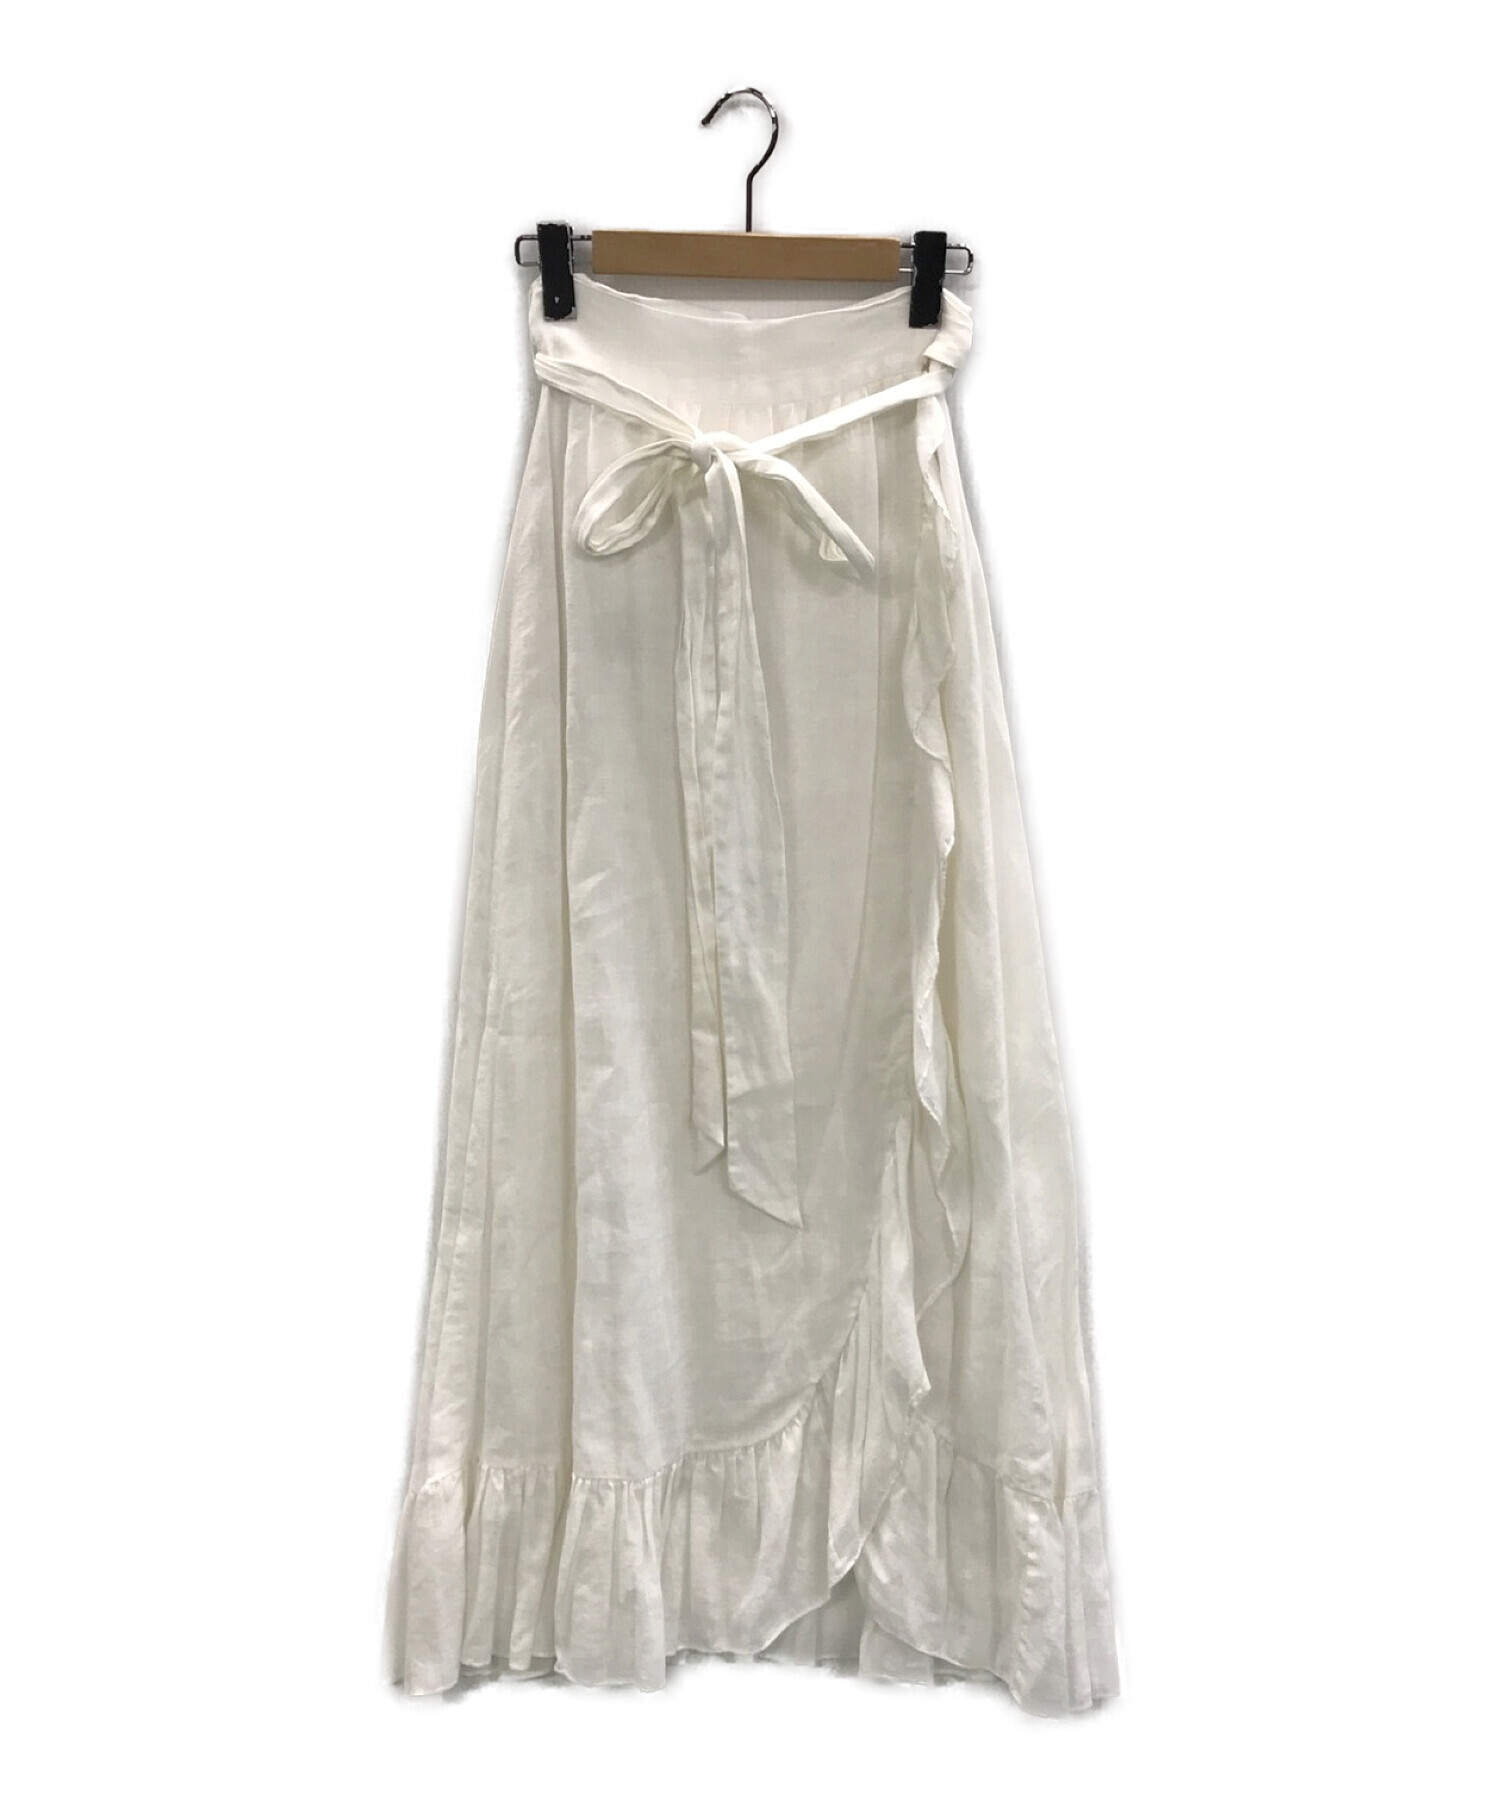 ISABEL MARANT ETOILE (イザベルマランエトワール) リネンラップスカート ホワイト サイズ:36